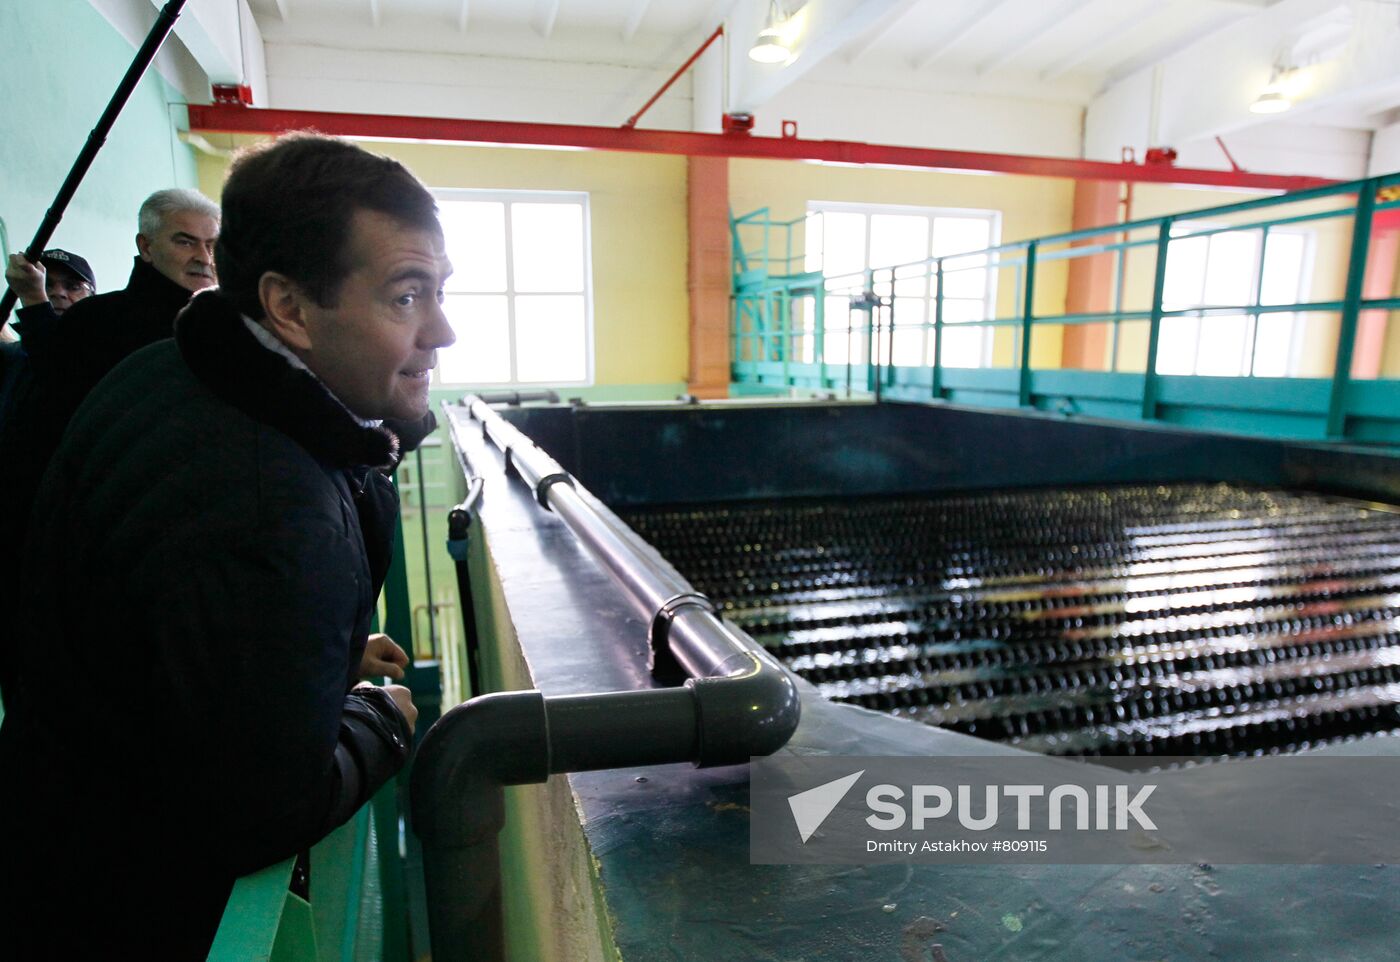 Dmitry Medvedev visits Syktyvkar